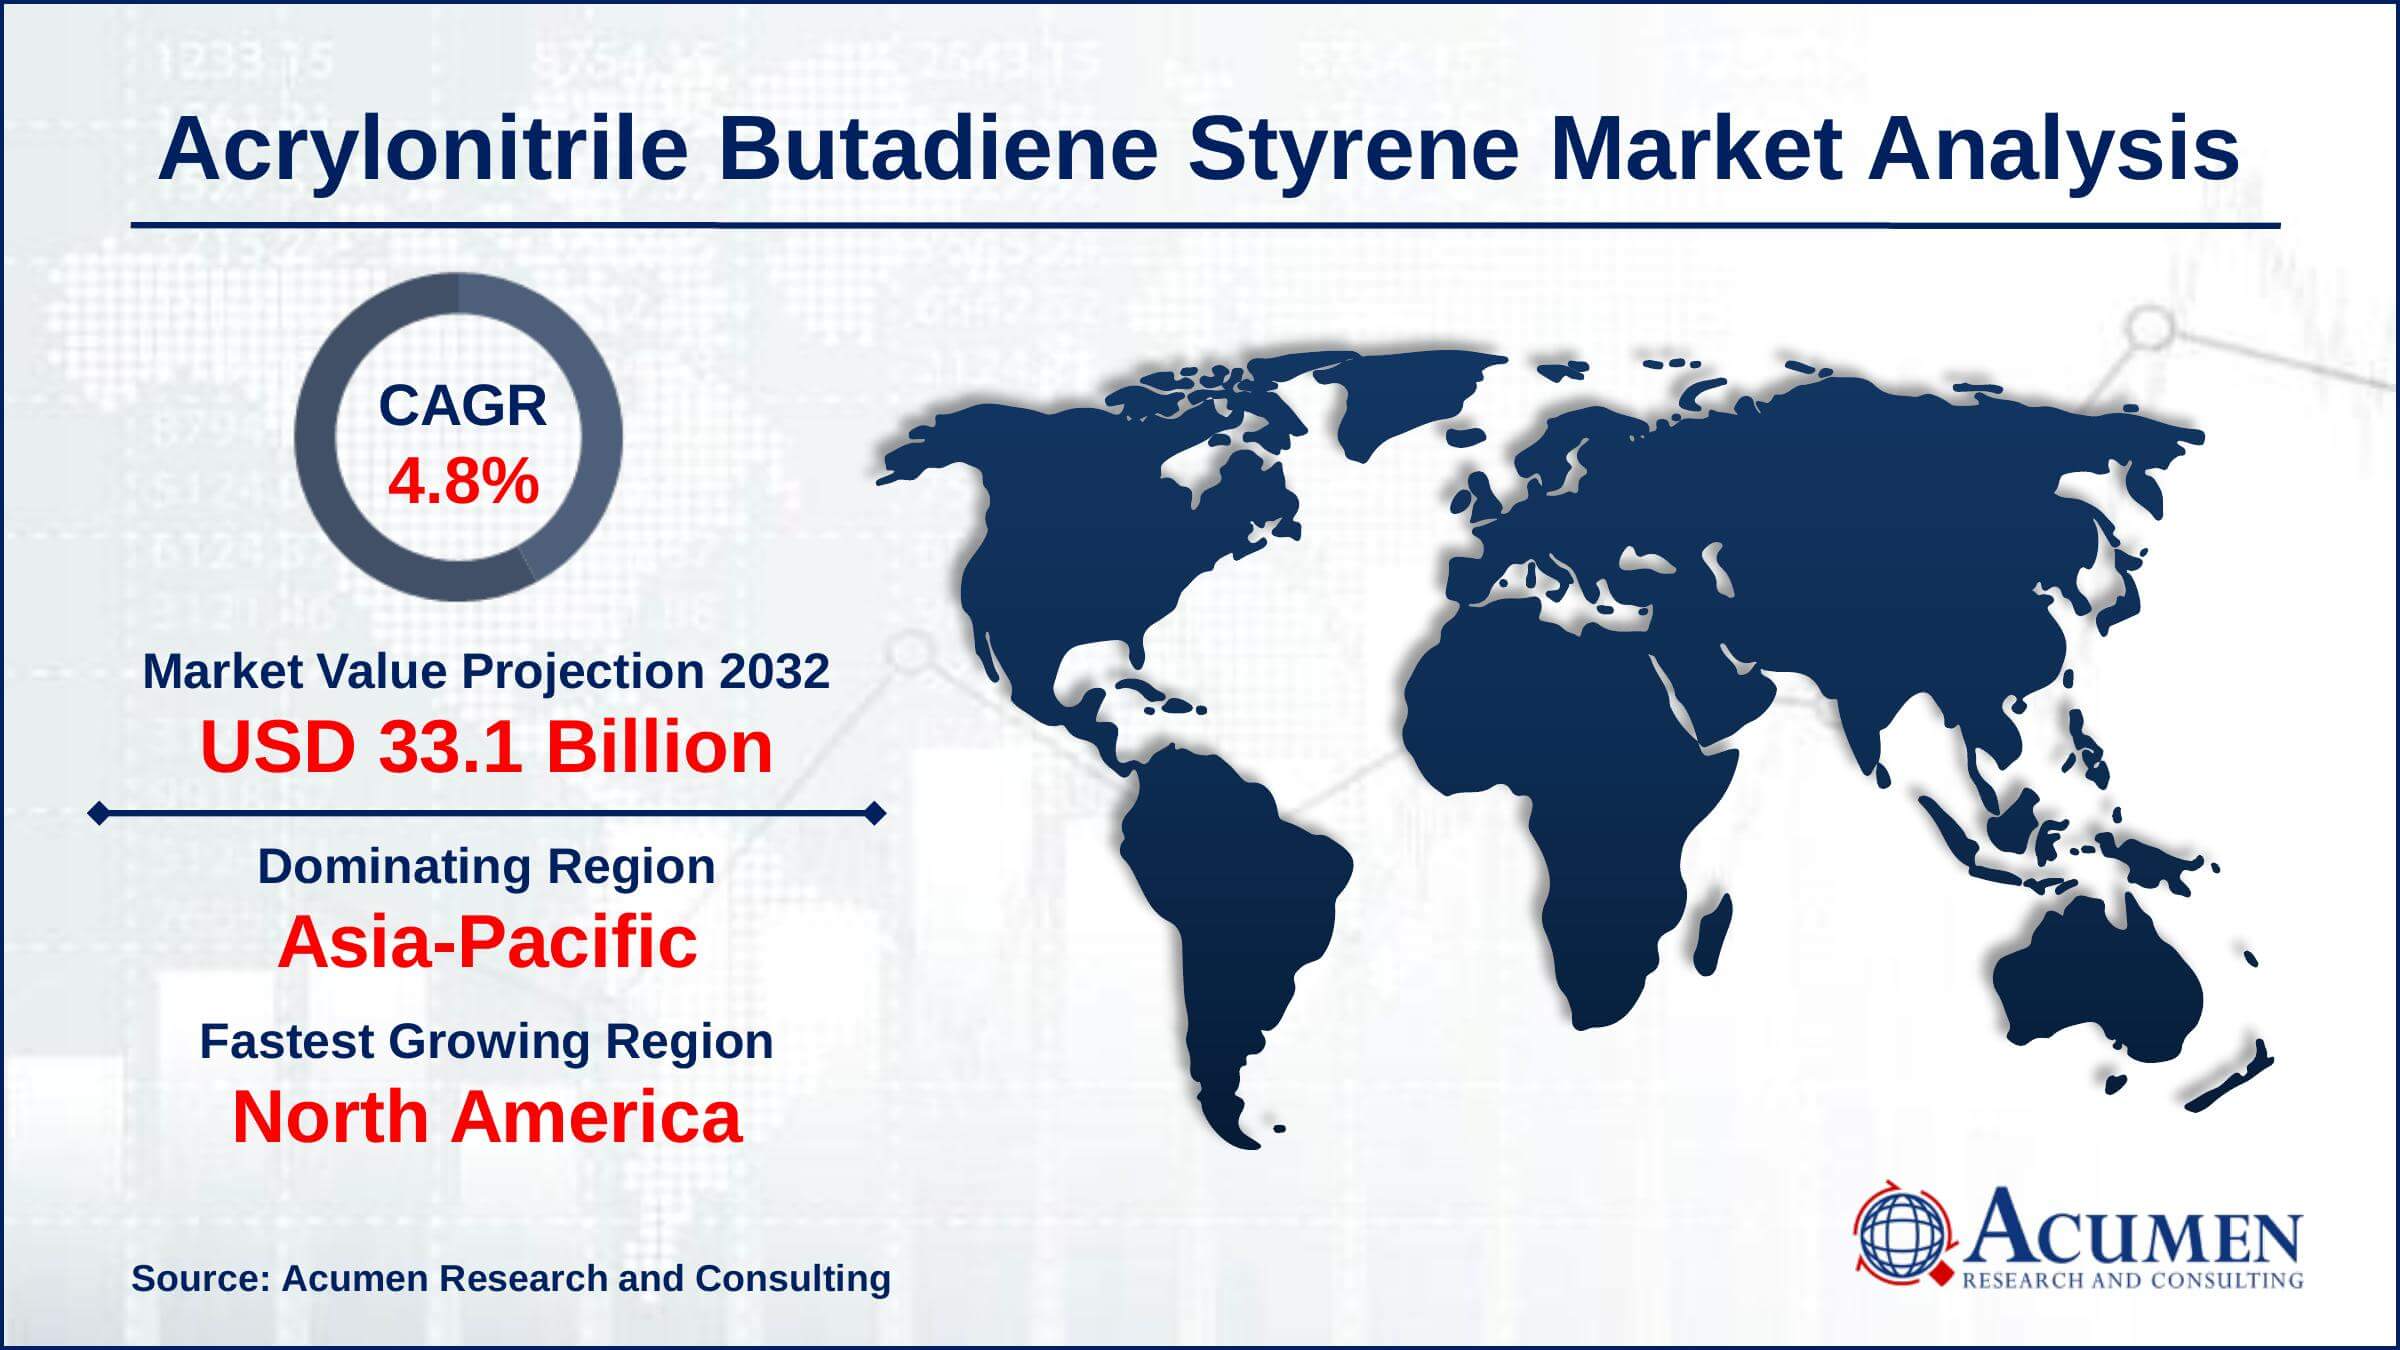 Global Acrylonitrile Butadiene Styrene Market Trends